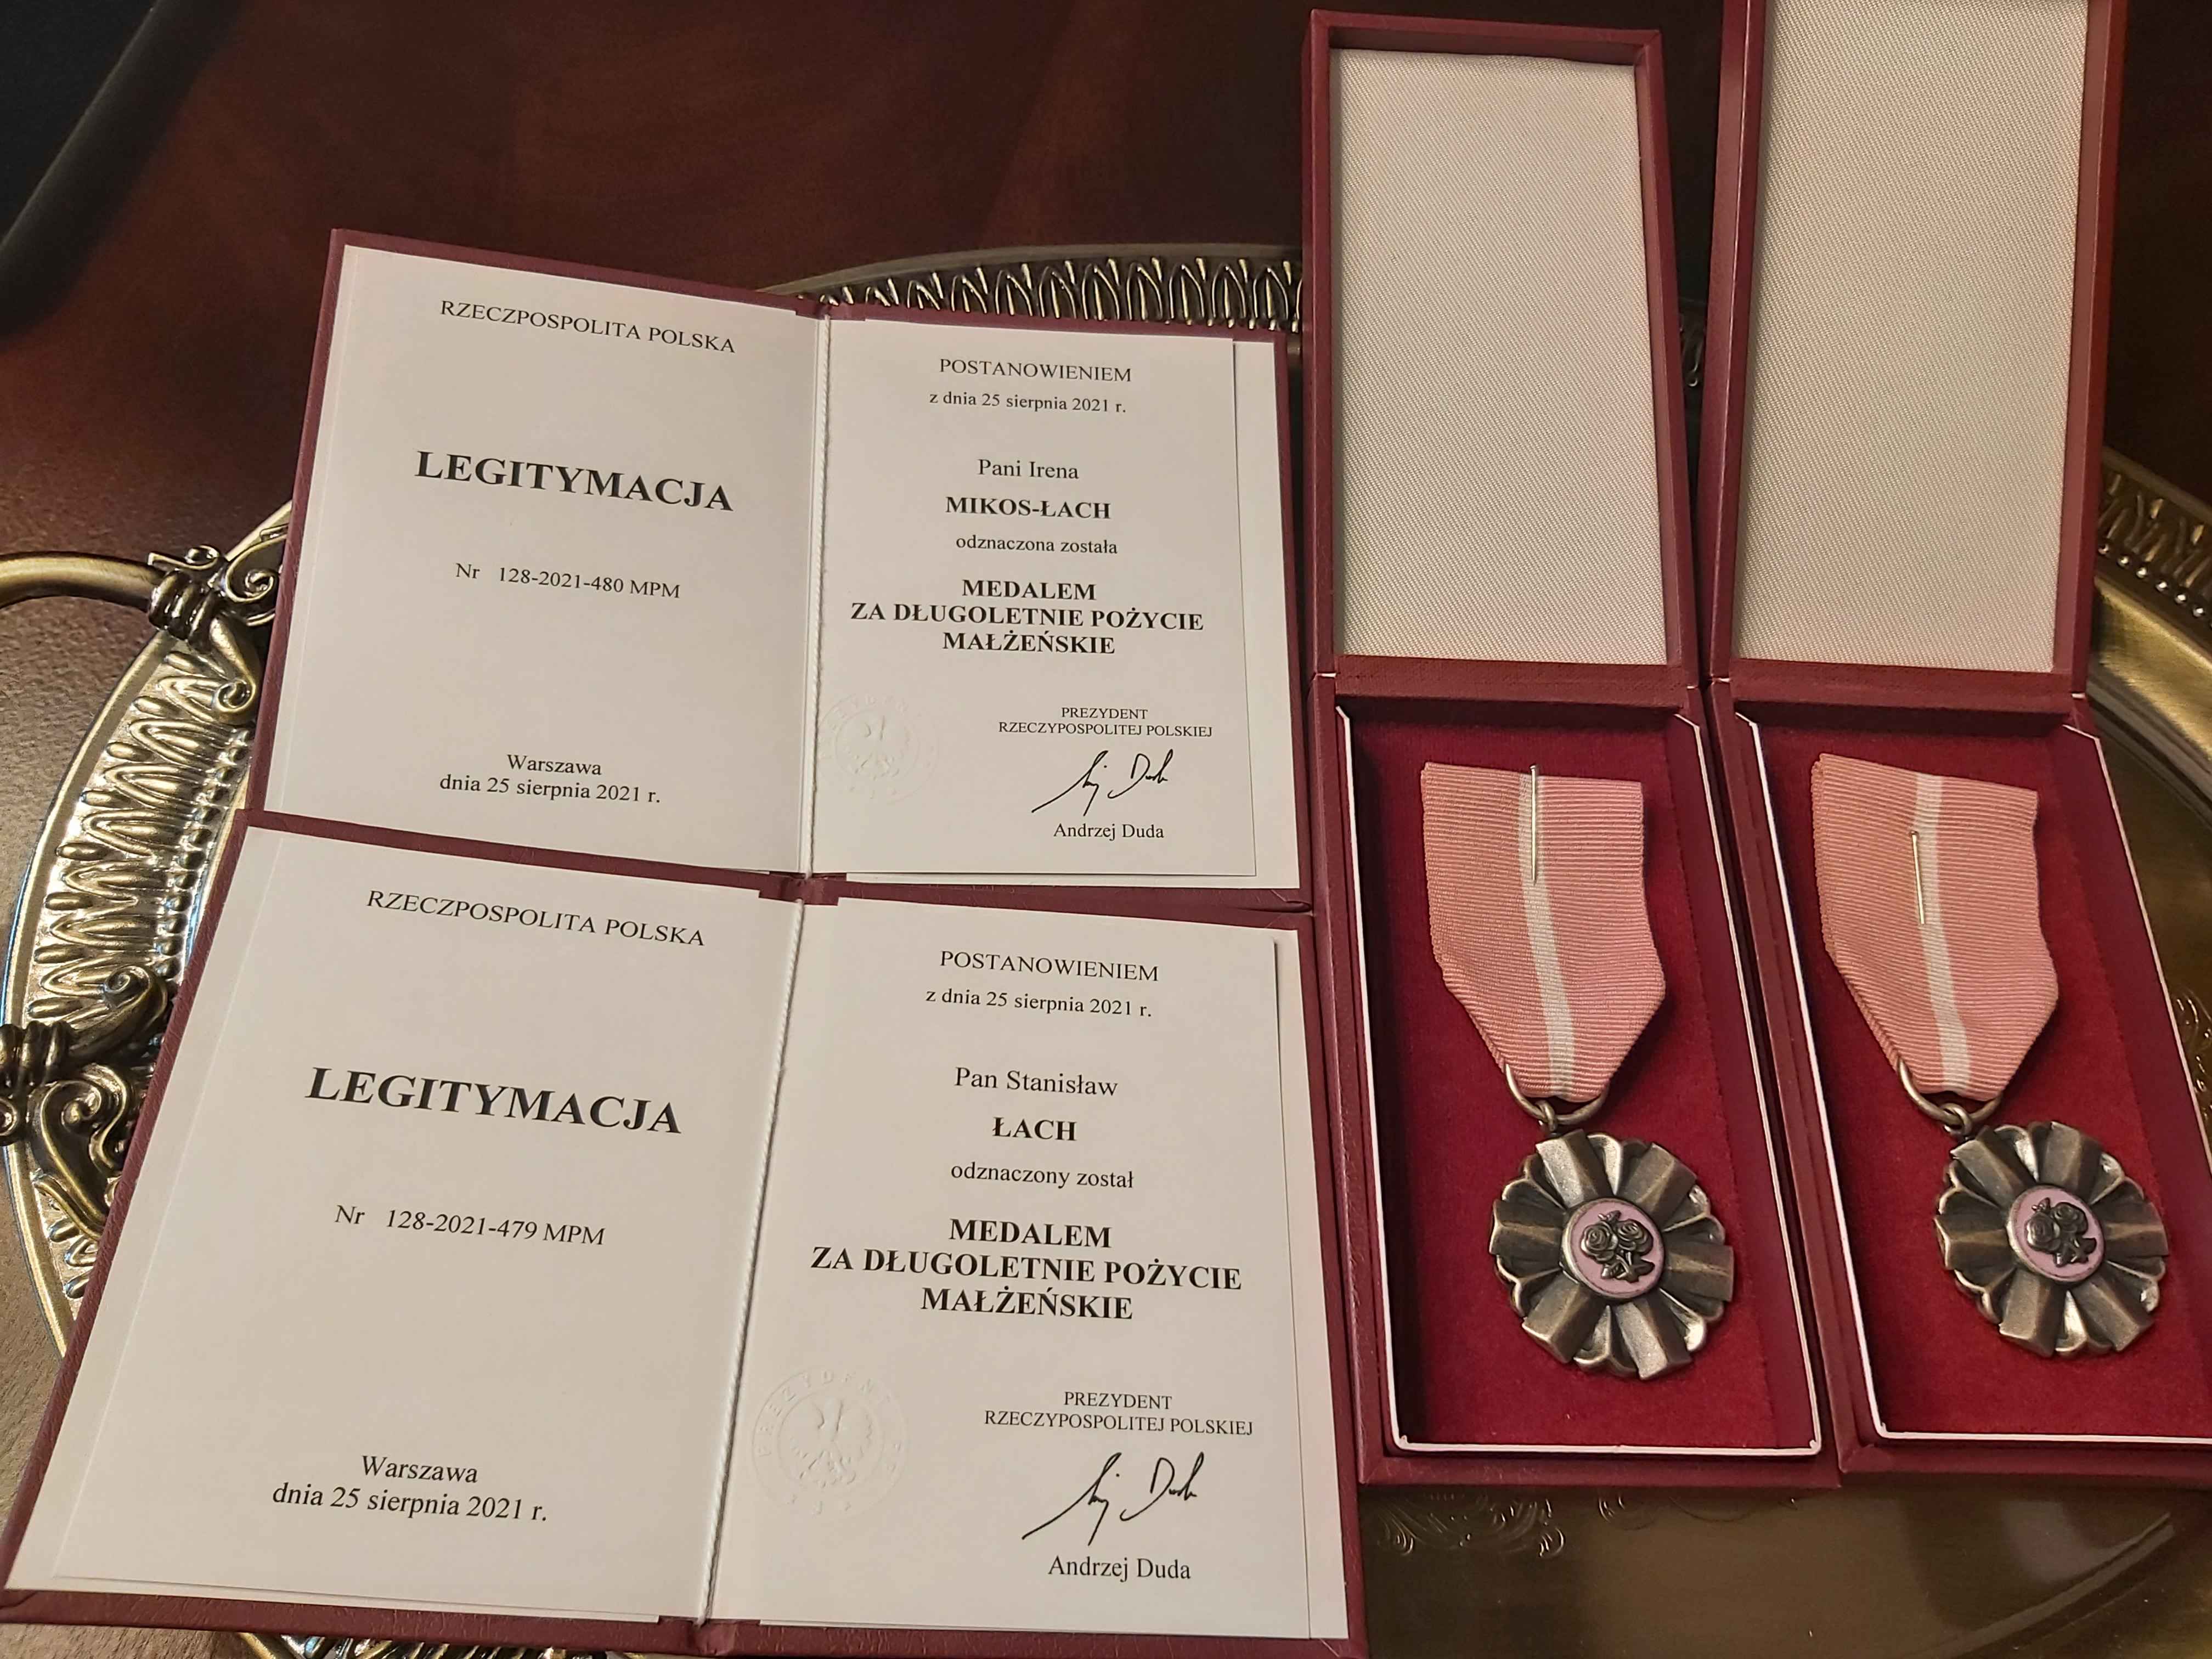 Na zdjęciu widzimy 2 okolicznościowe medale za Długoletnie Pożycie Małżeńskie oraz Legitymacje dla Pana Stanisława Łach oraz Pani Ireny  Mikos-Łach  z tej samej okazji